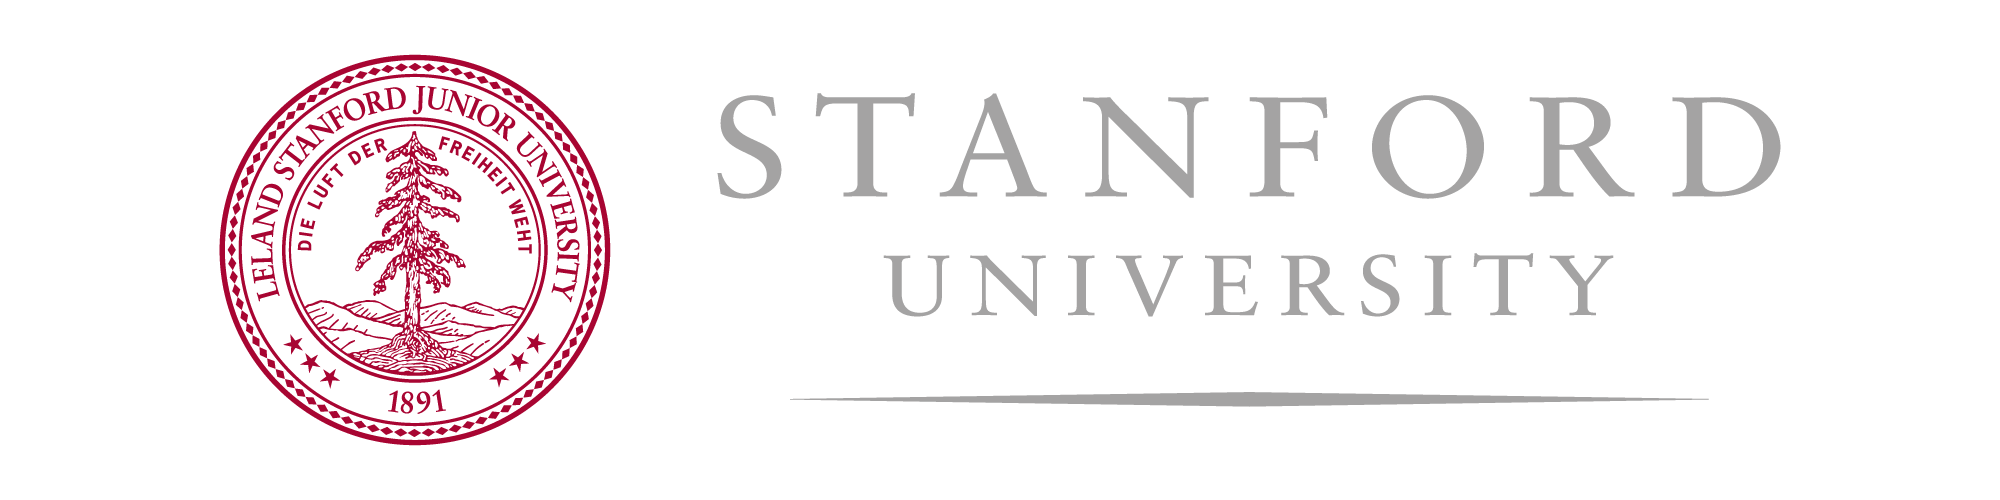 stanford university logo